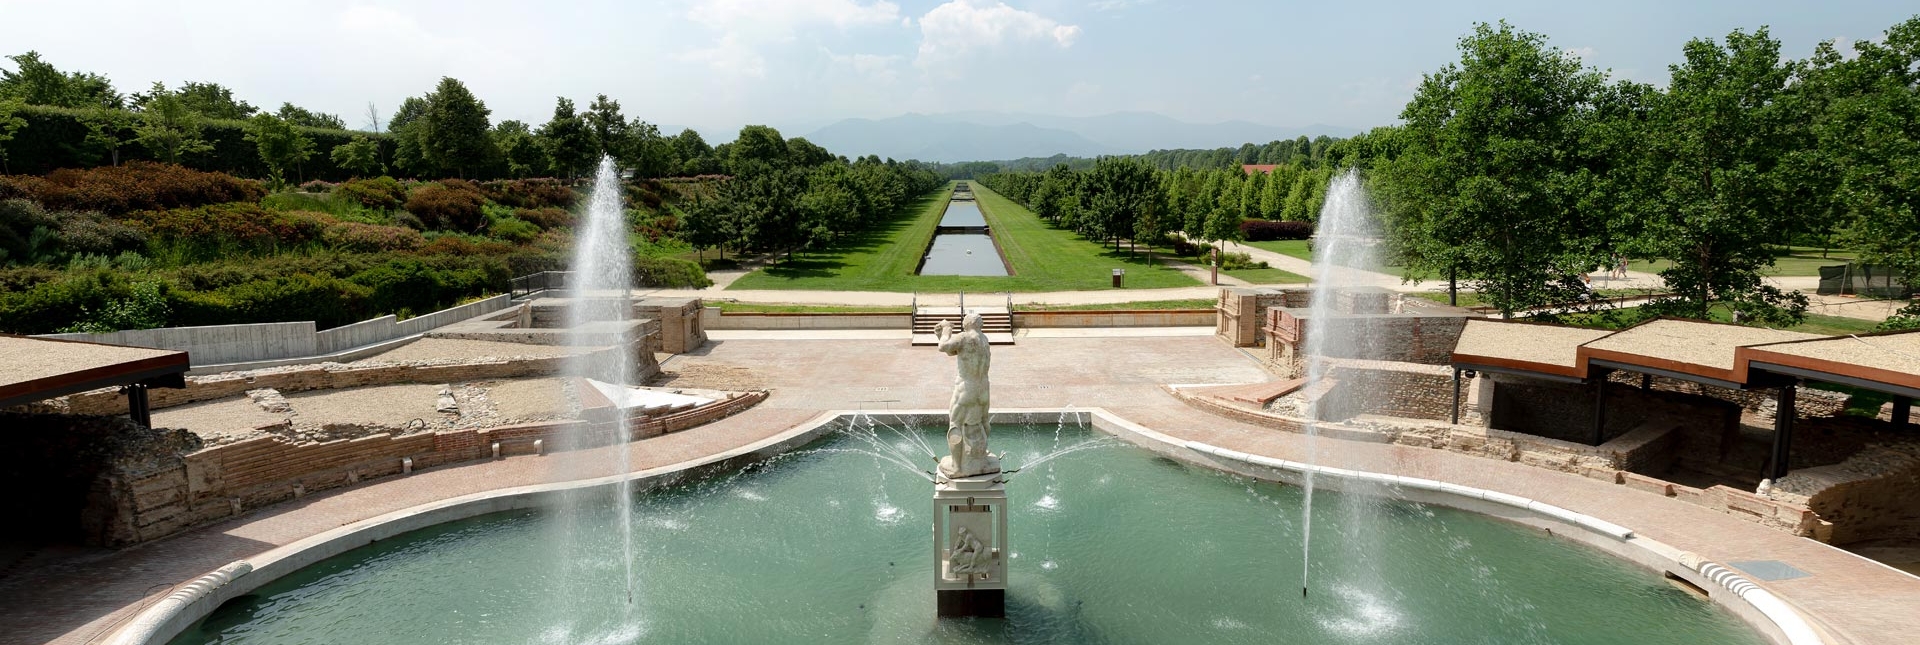 I Giardini visti dalla Fontana dell'Ercole - Foto di Paolo Robino